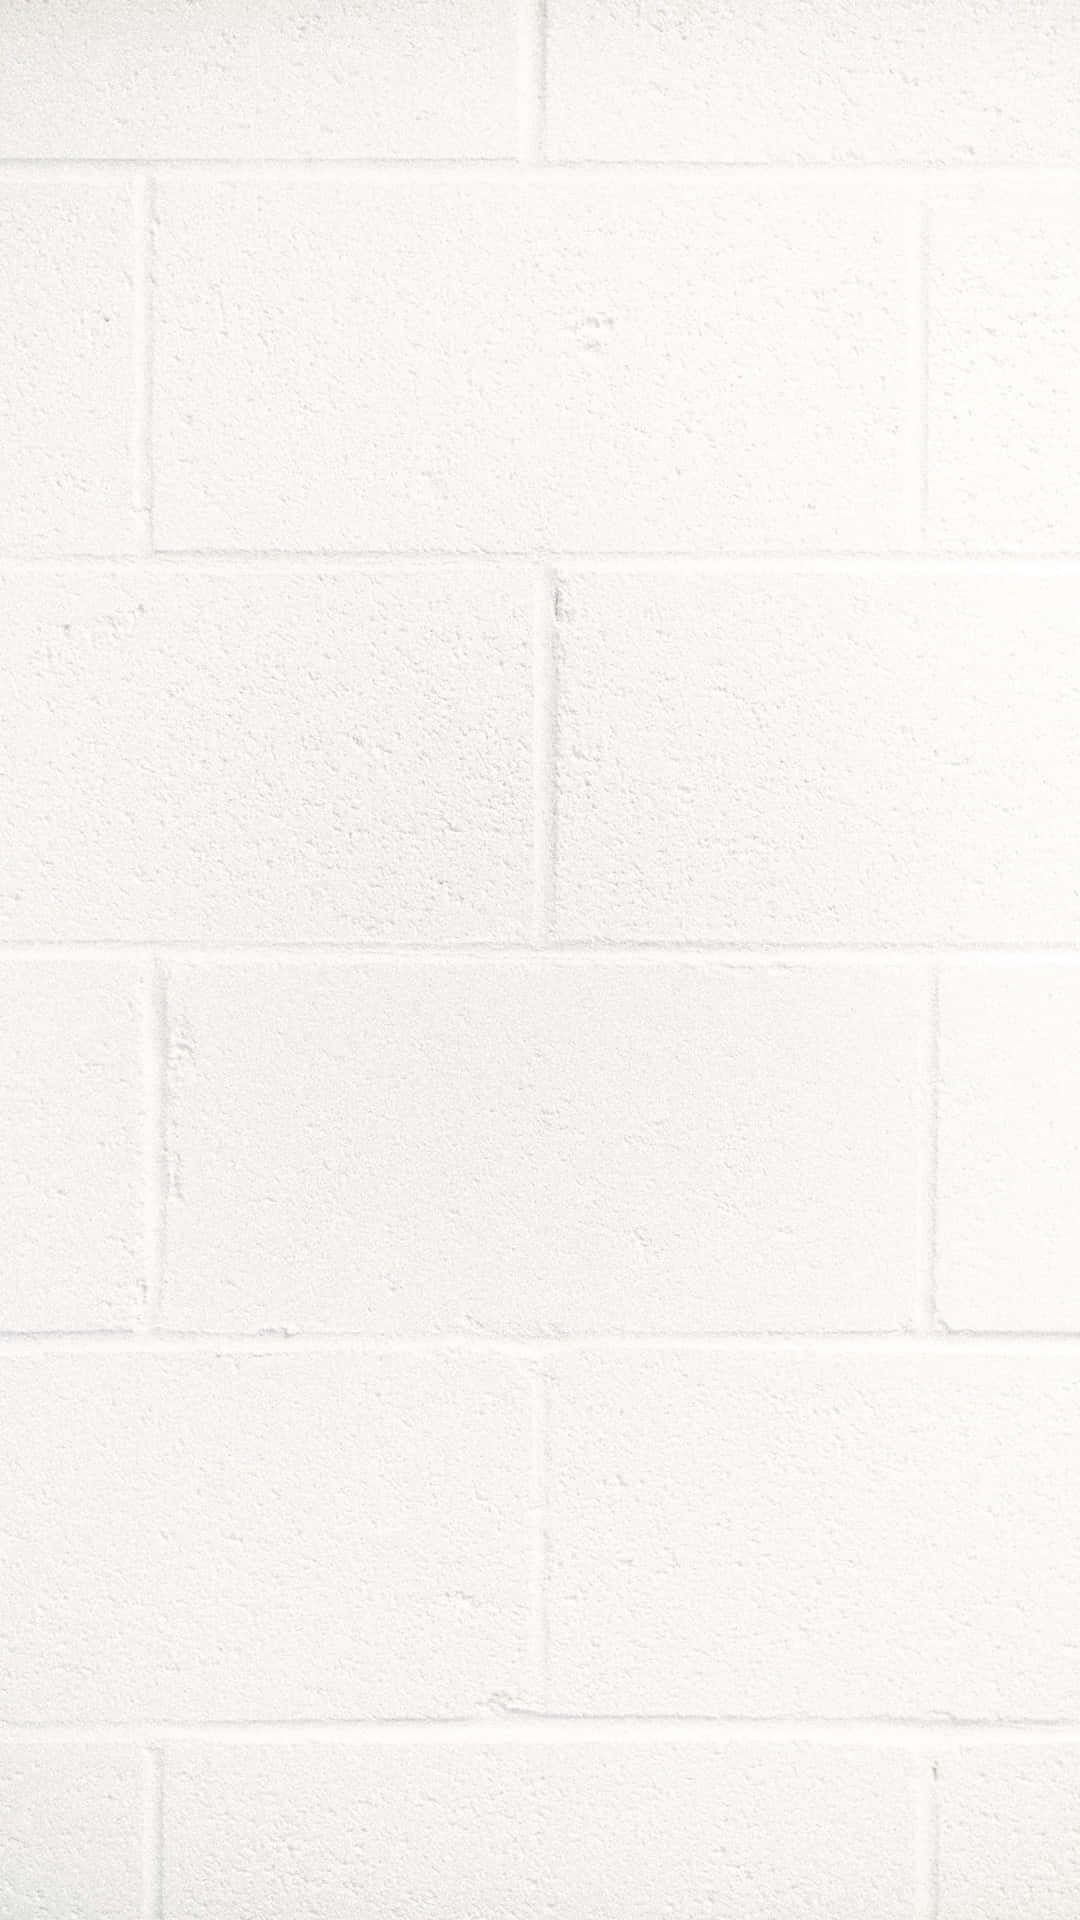 Unmuro De Ladrillo Blanco Con Un Estilo Moderno Para Tu Diseño De Interiores.